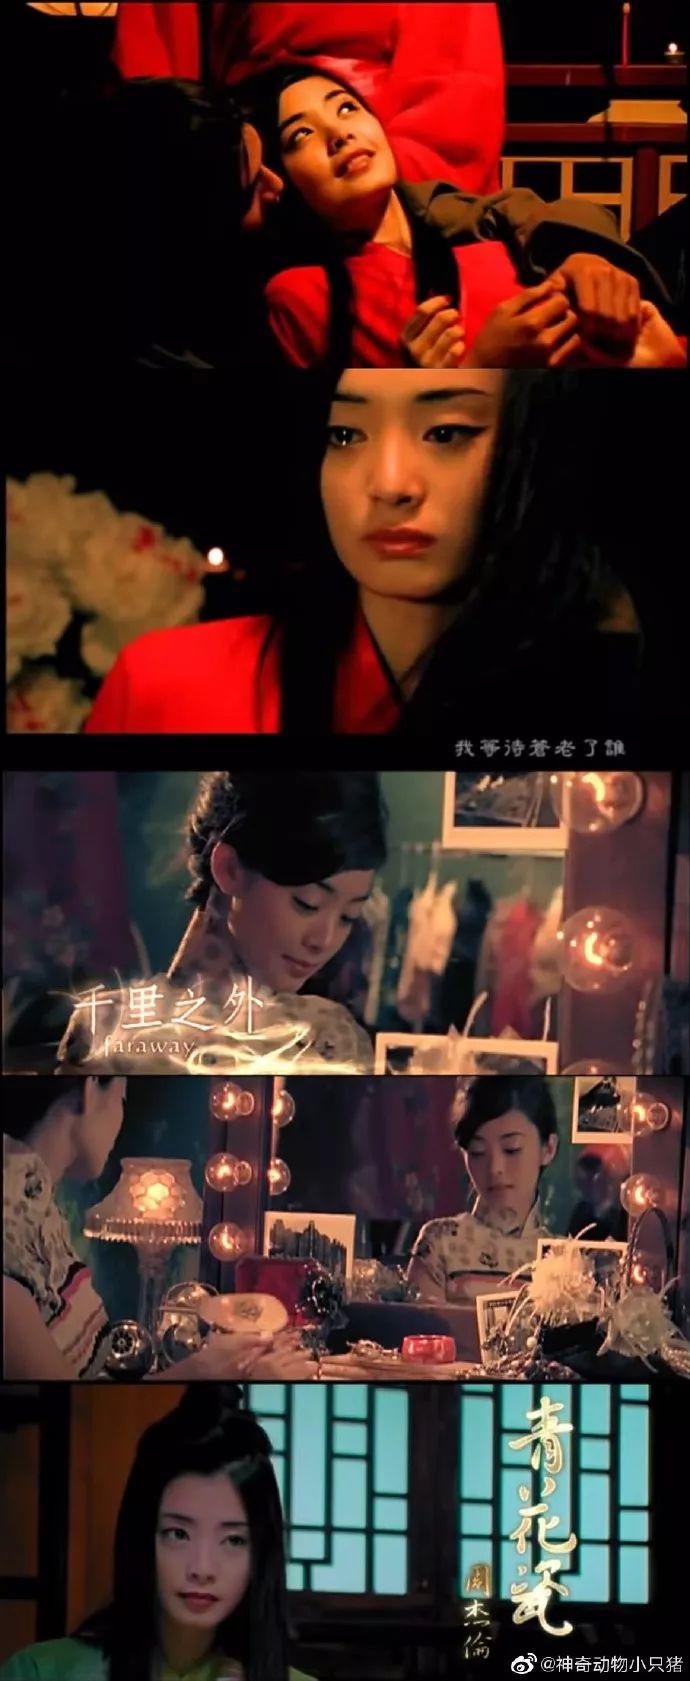 夏如芝曾拍摄许多周杰伦MV的作品。